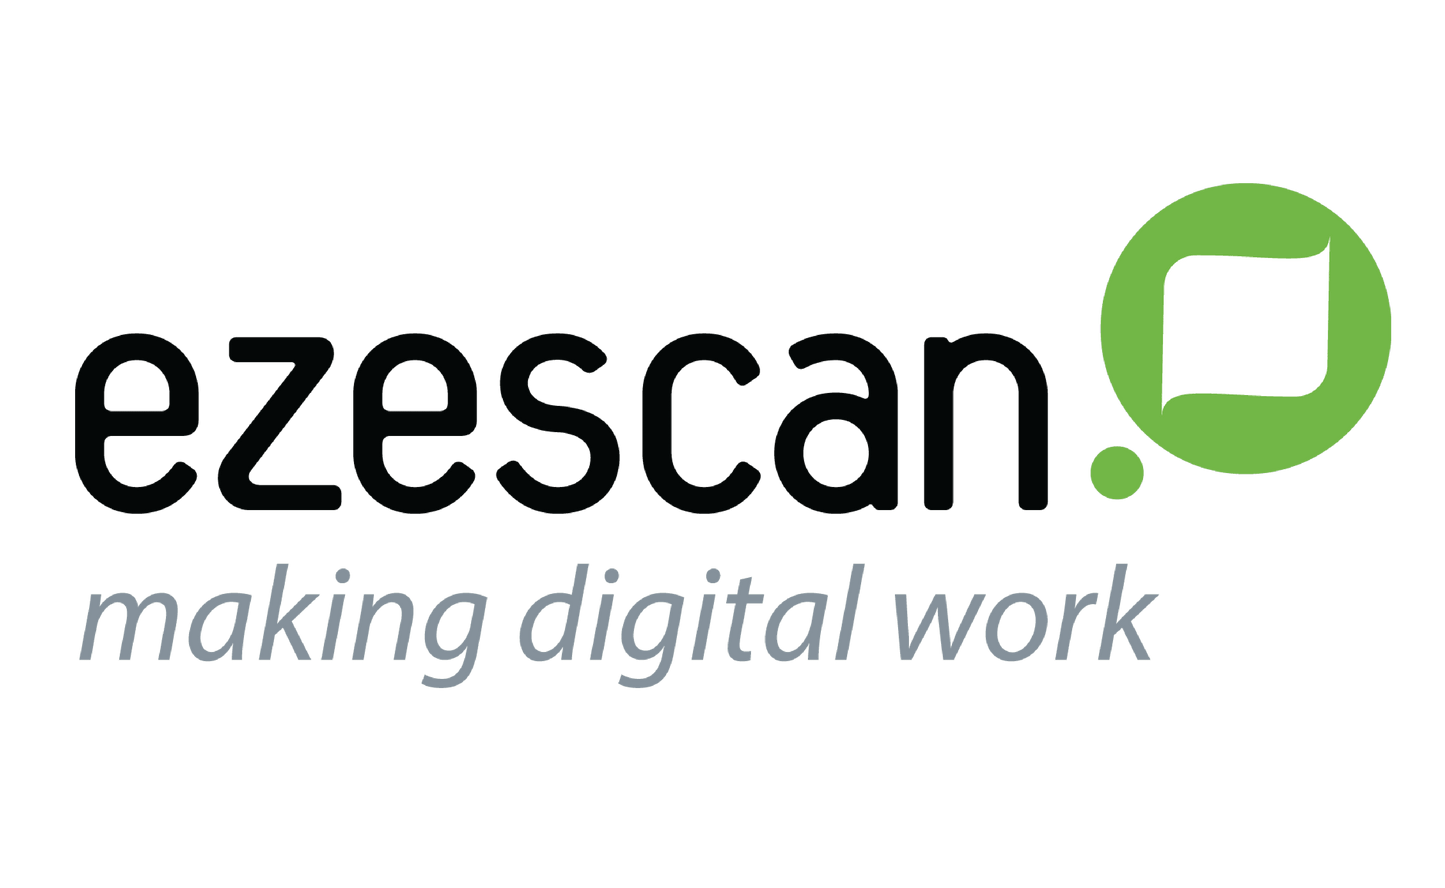 EzeScan